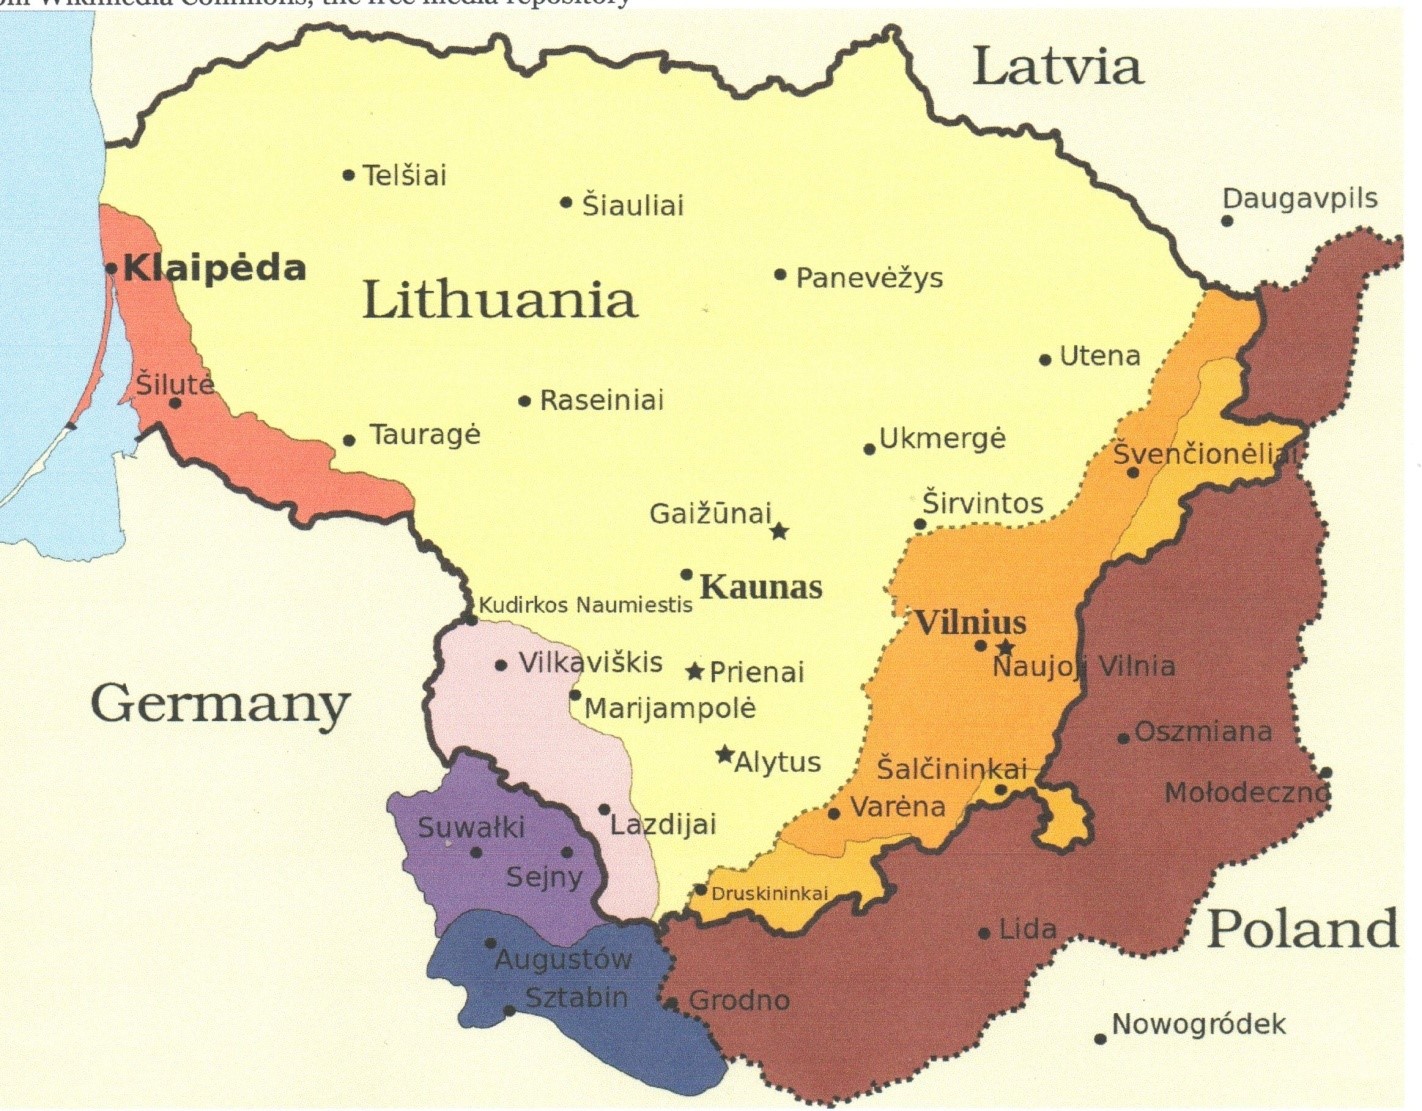 Šiame žemėlapyje matome Lietuvos sienų kaitą XX amžiuje. Šviesiai ruda spalva nubraižyta teritorija yra 1939 metais sugražintas Vilniaus kraštas, smėlio spalva pažymėta Druskininkų apylinkės , Varėnos rajono dalis, Šalčininkai su Dieveniškėmis bei Ignalinos ir Švenčionių rajonų dalis tai teritorijos grįžusios Lietuvai 1940 metais.